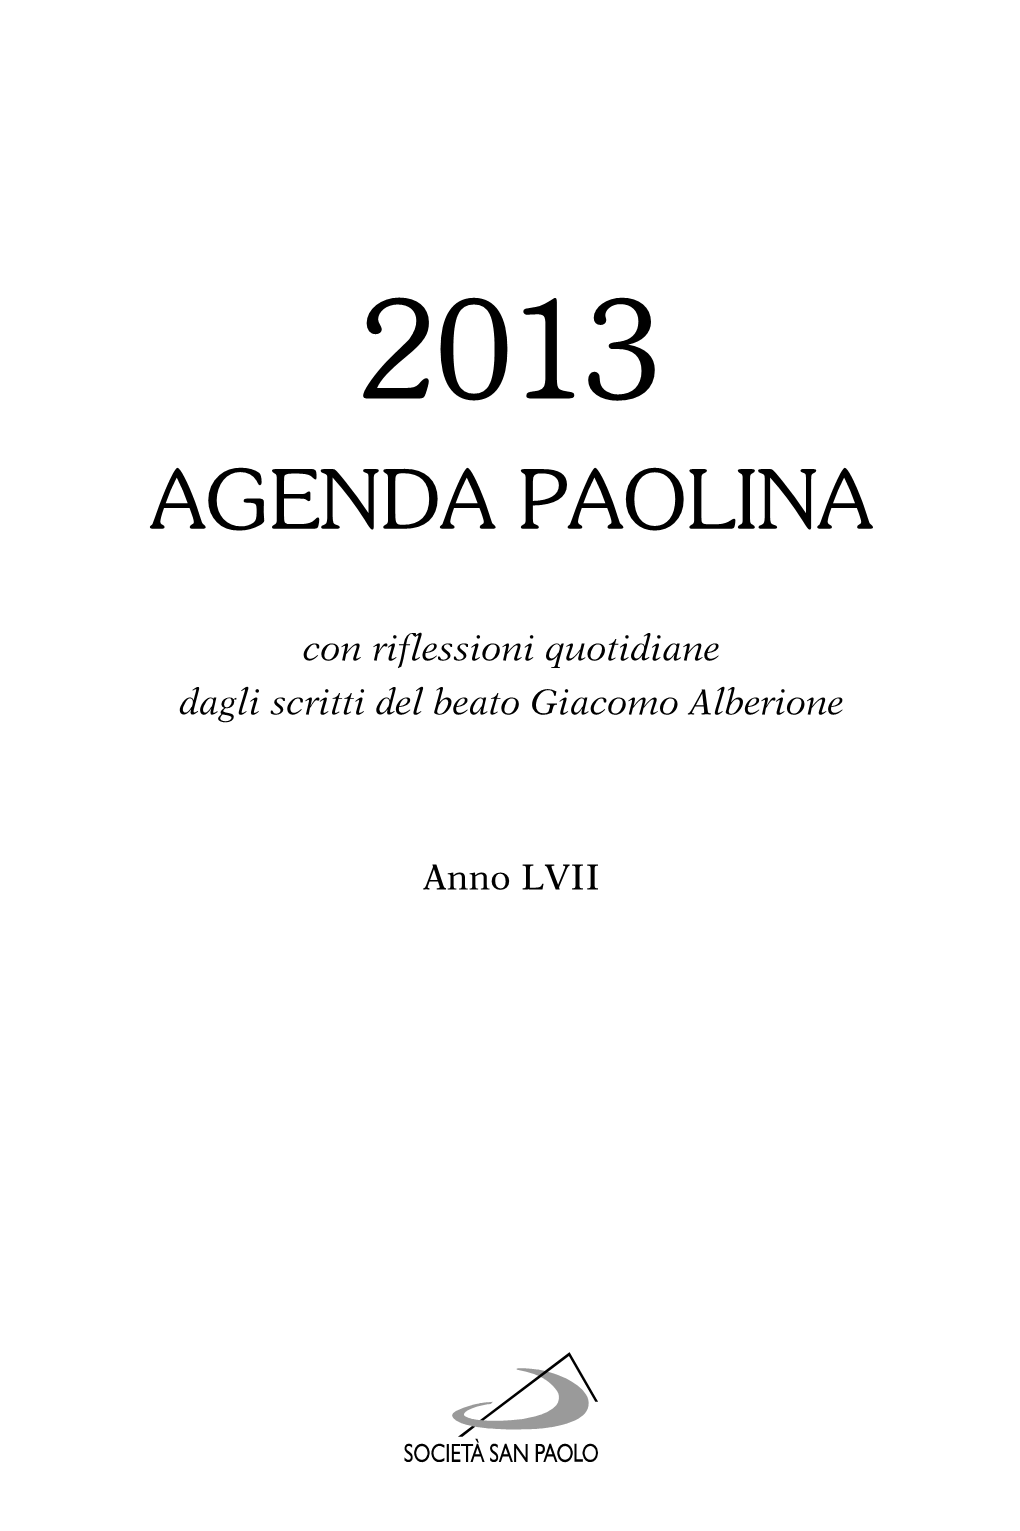 Agenda Paolina